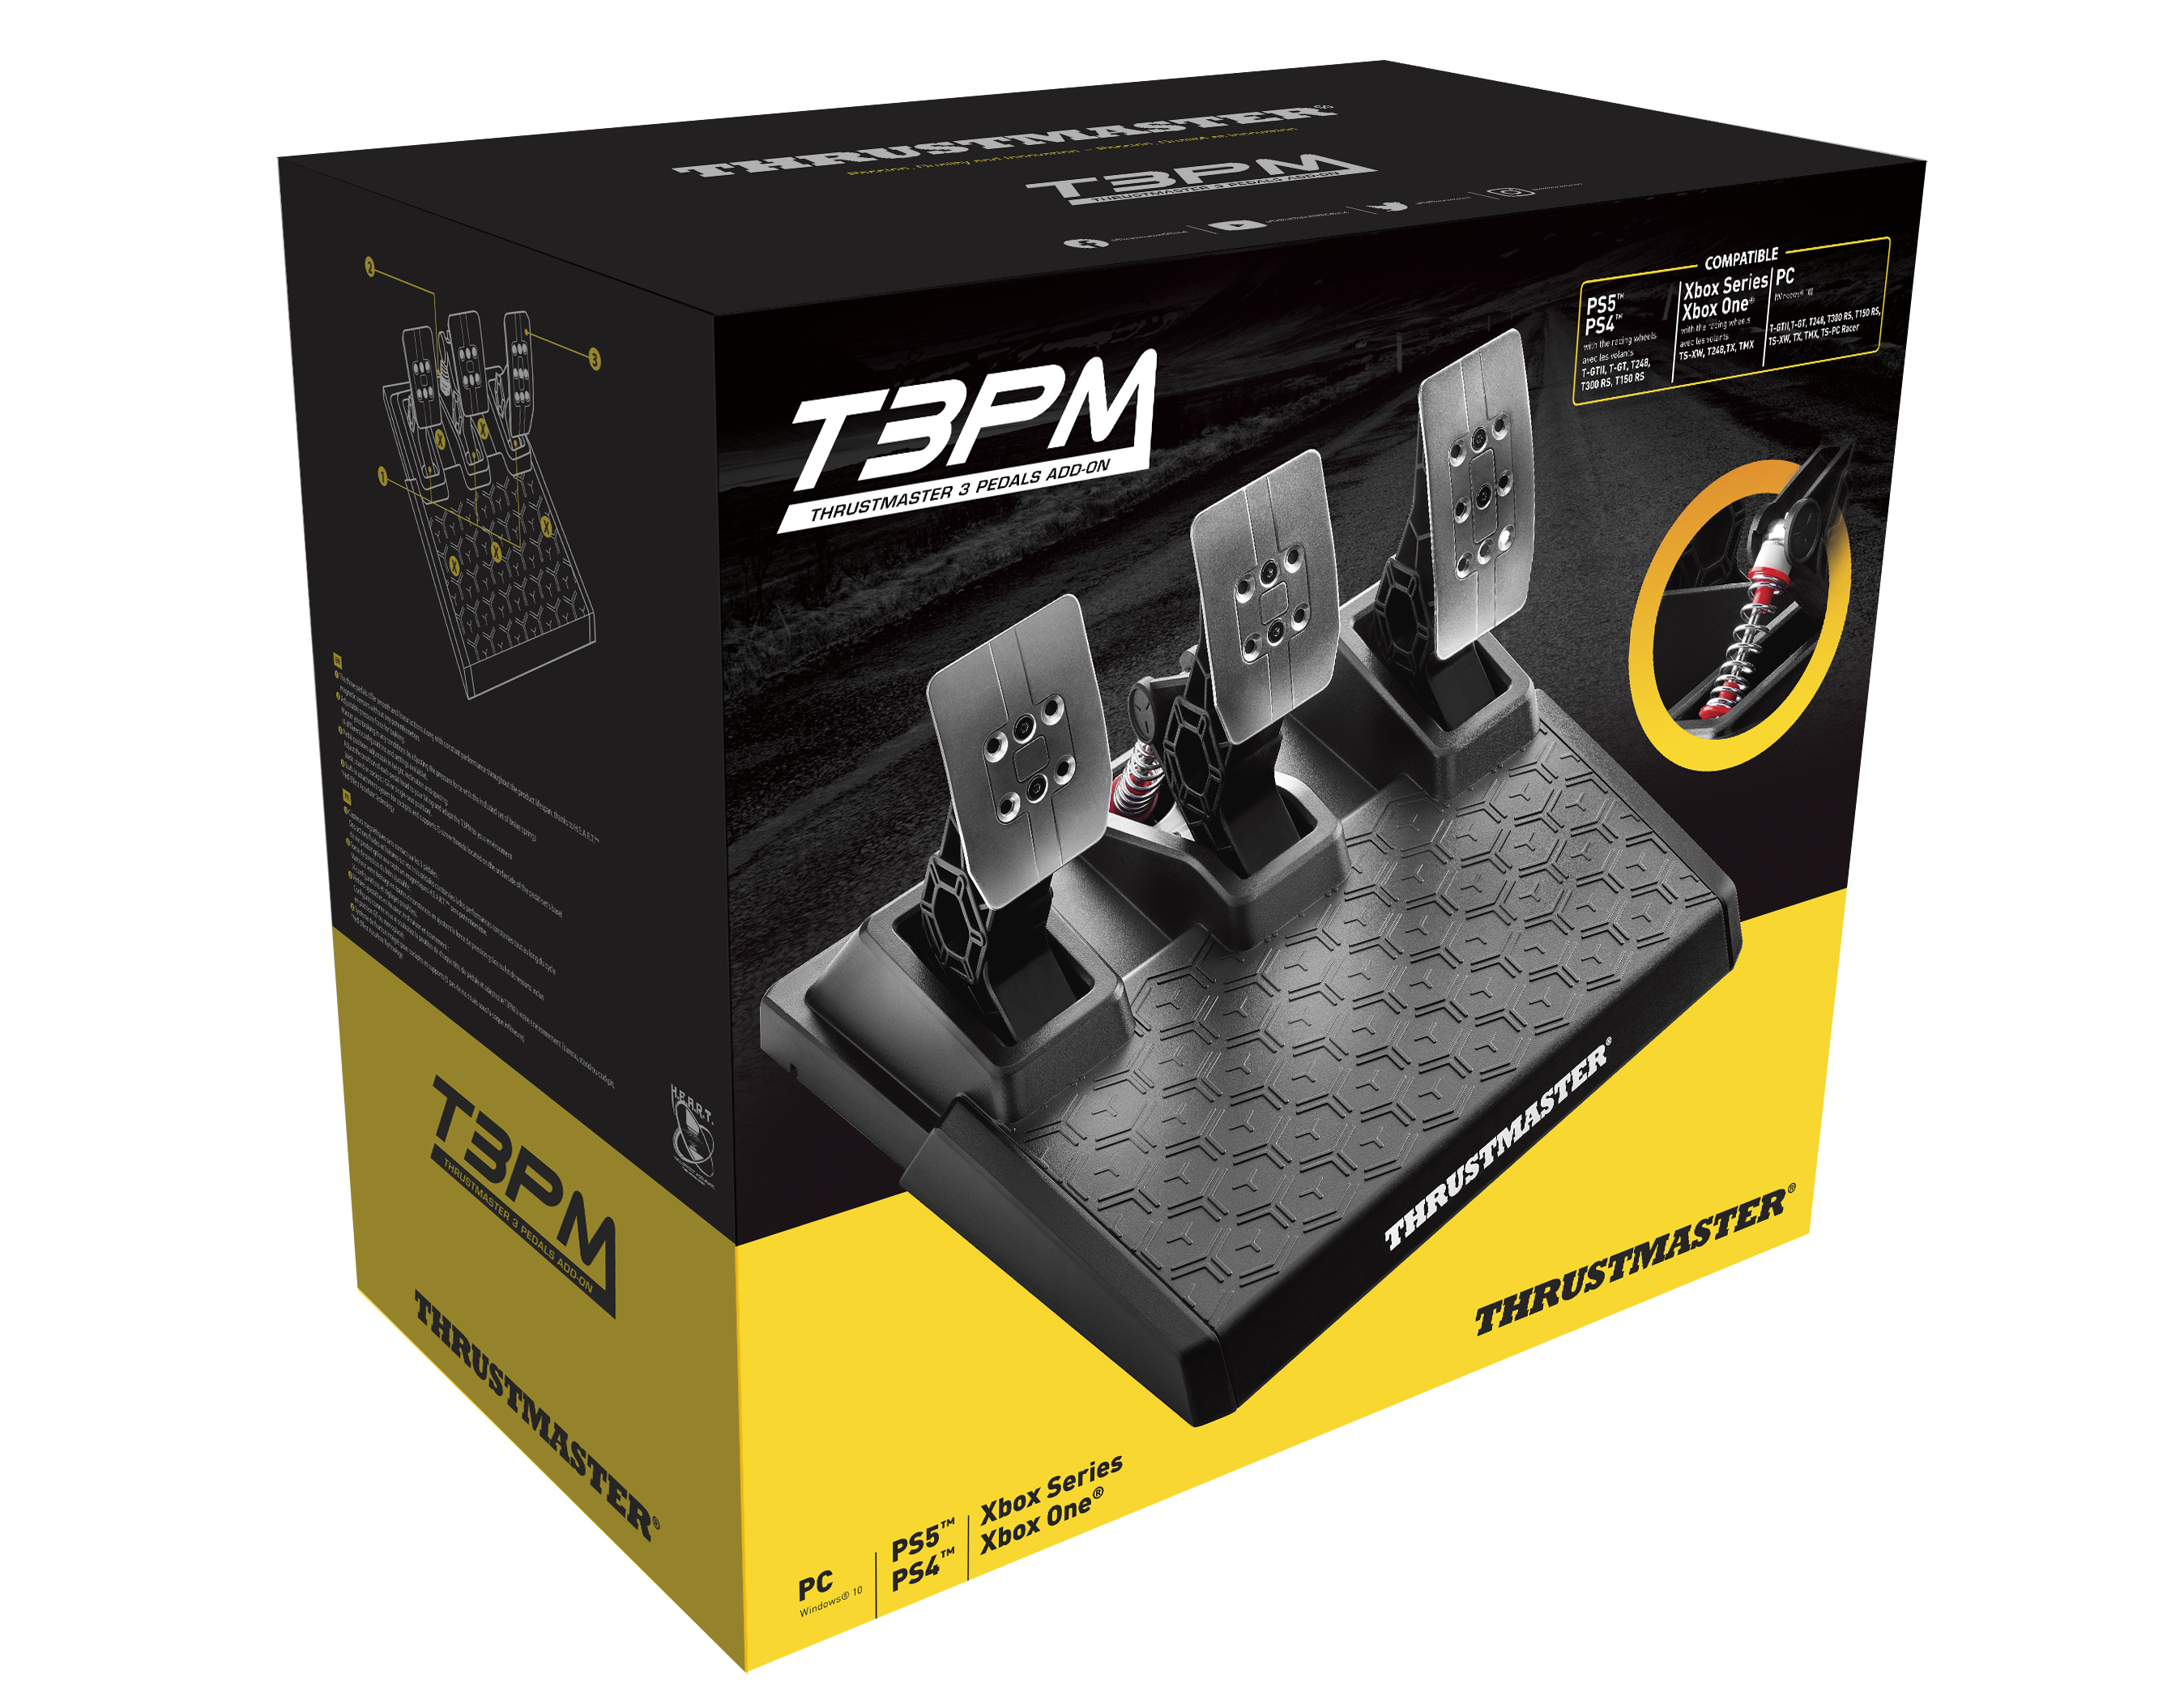 ThrustMaster T3PM - Pedale - kabelgebunden - für PC